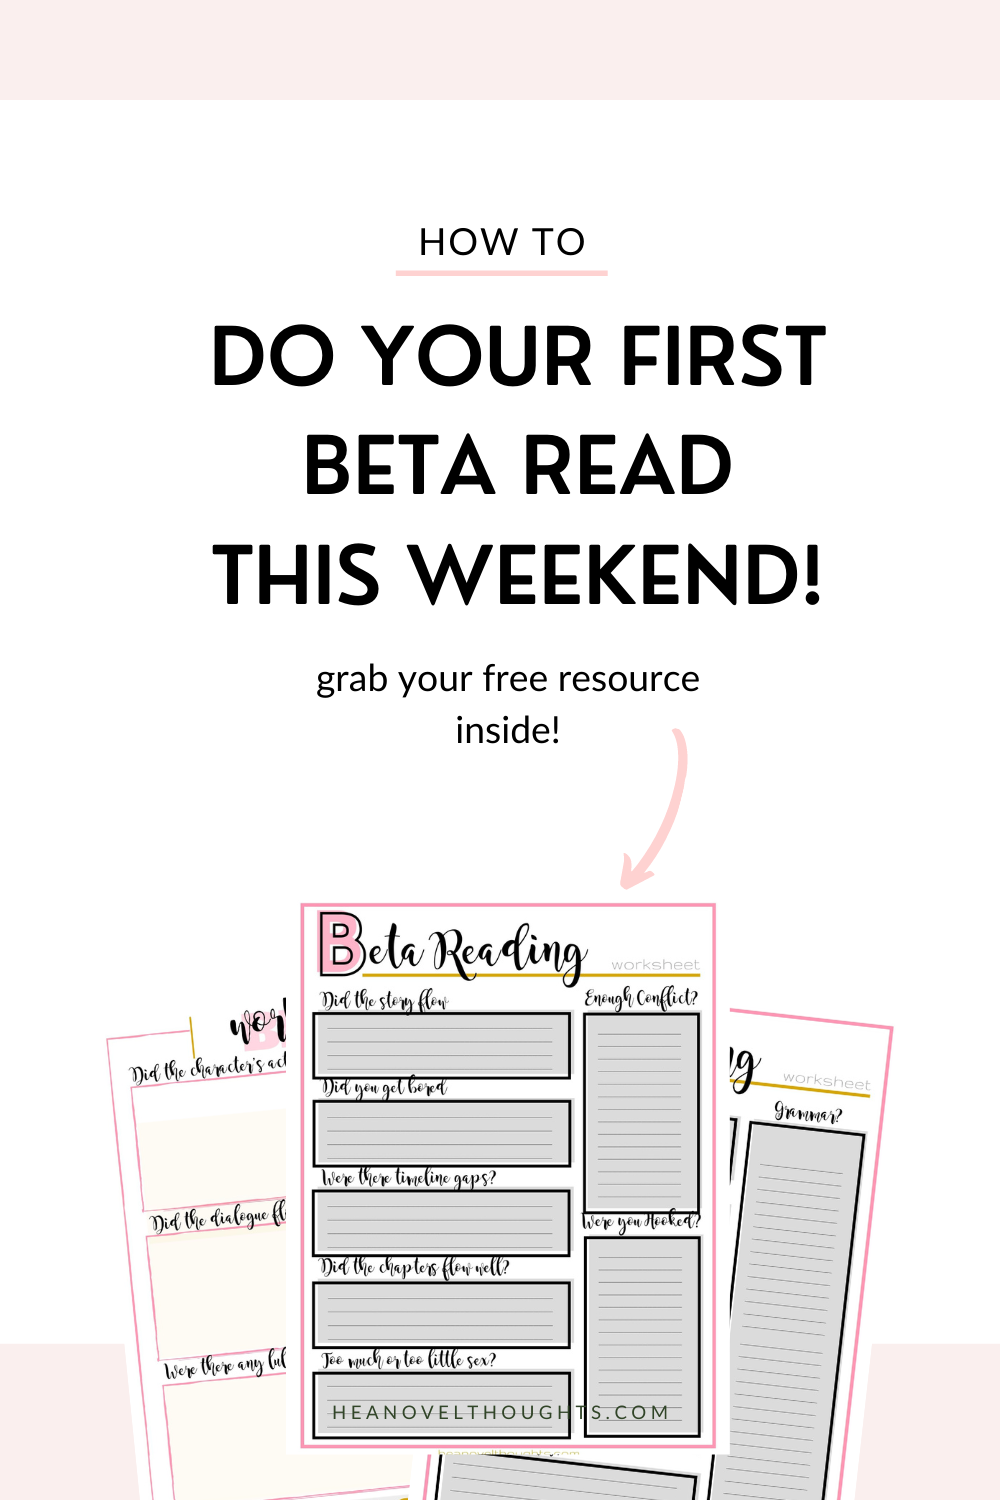 Beta Reading Worksheet